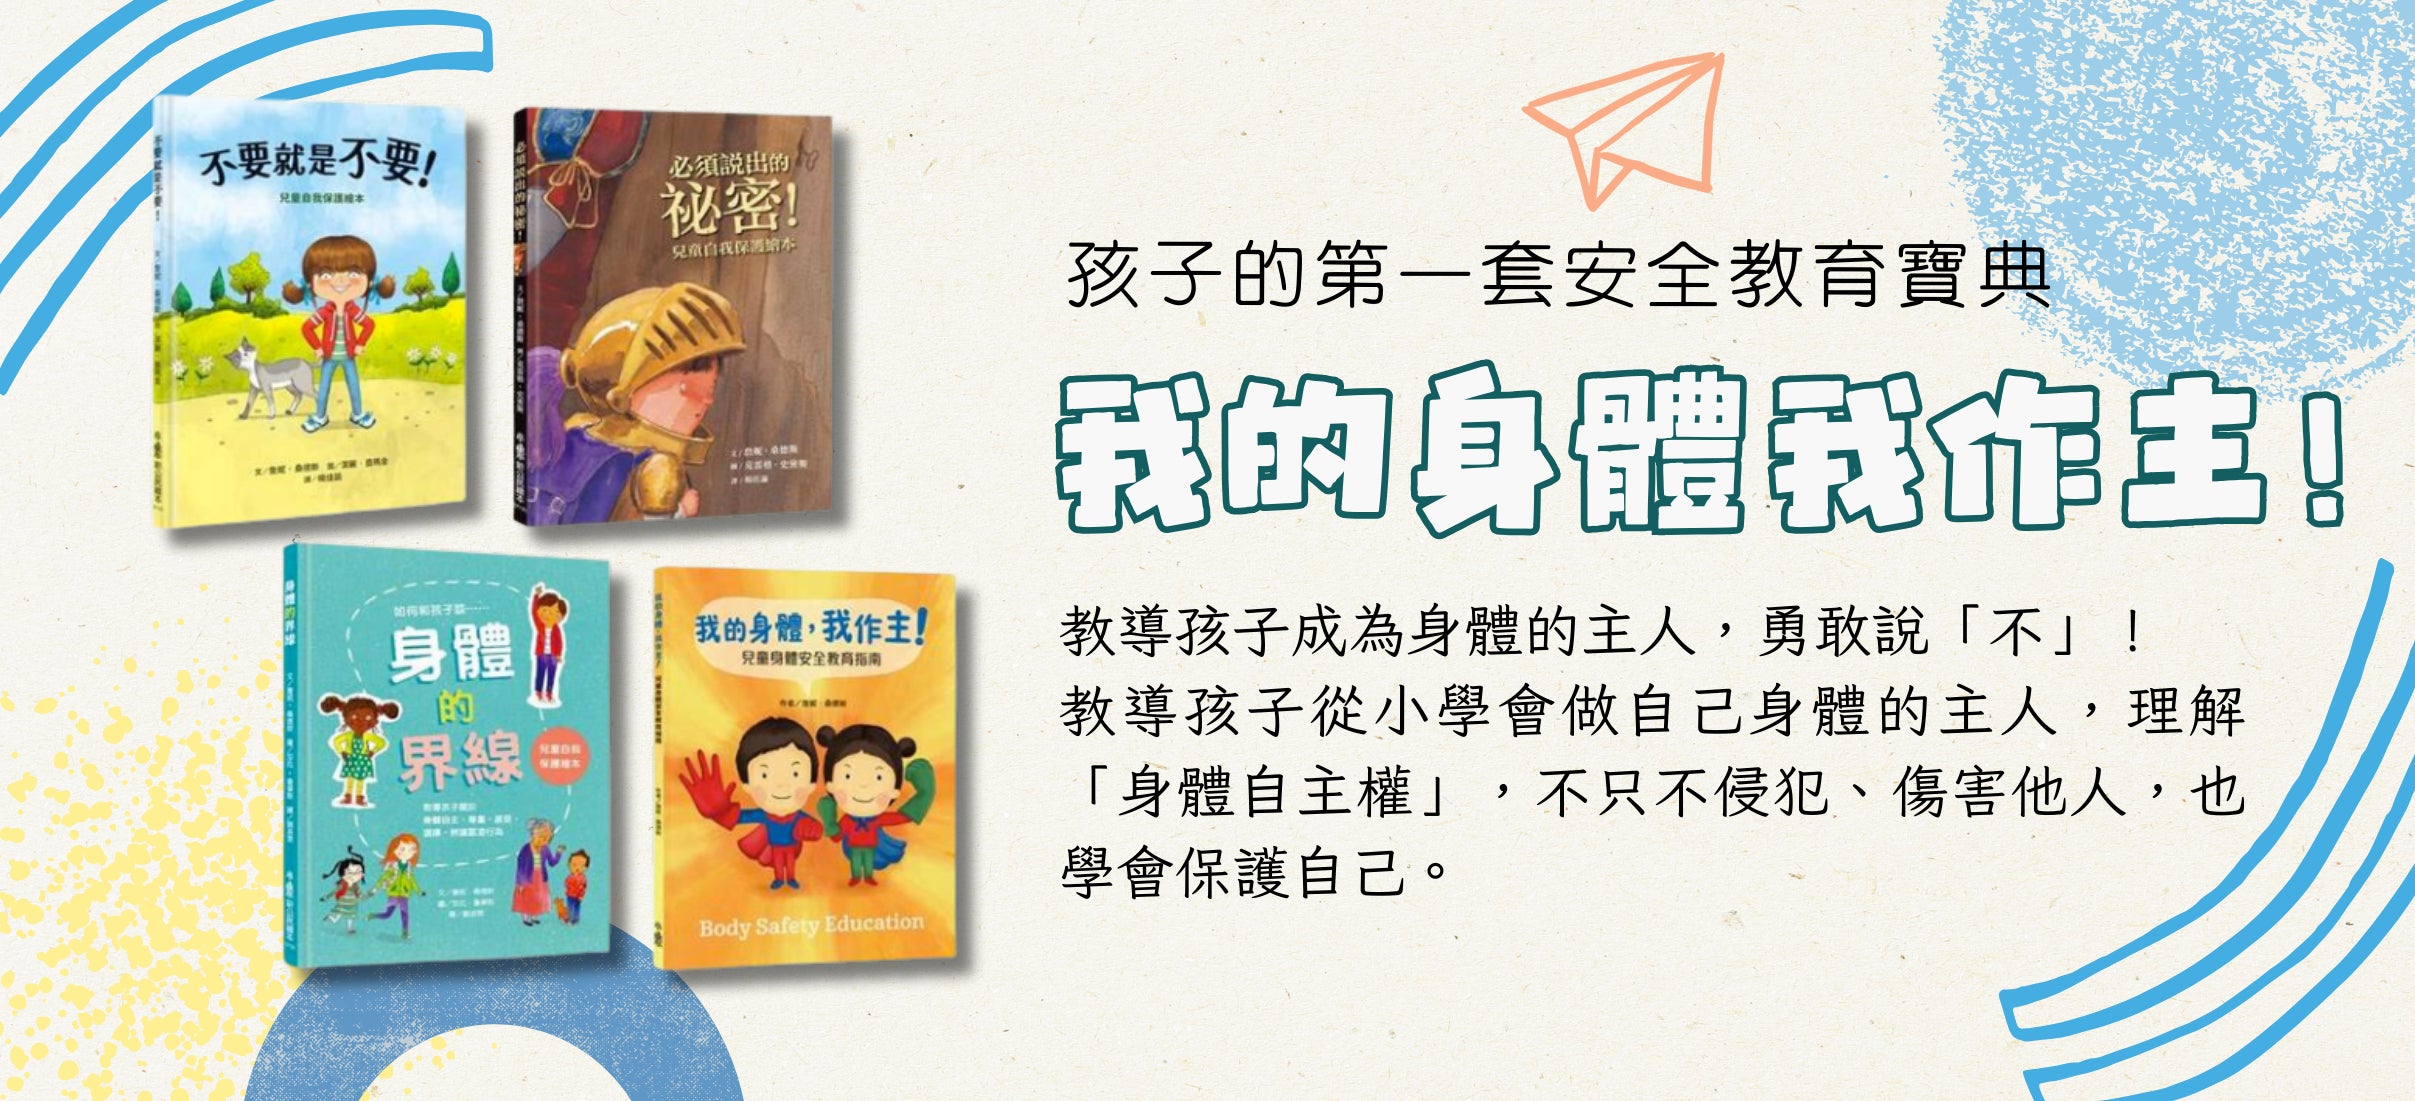 Buy Chinese Children S Books In Usa 美國中文繪本童書專賣gloria S Bookstore Gloria S Bookstore 美國中文繪本童書專賣